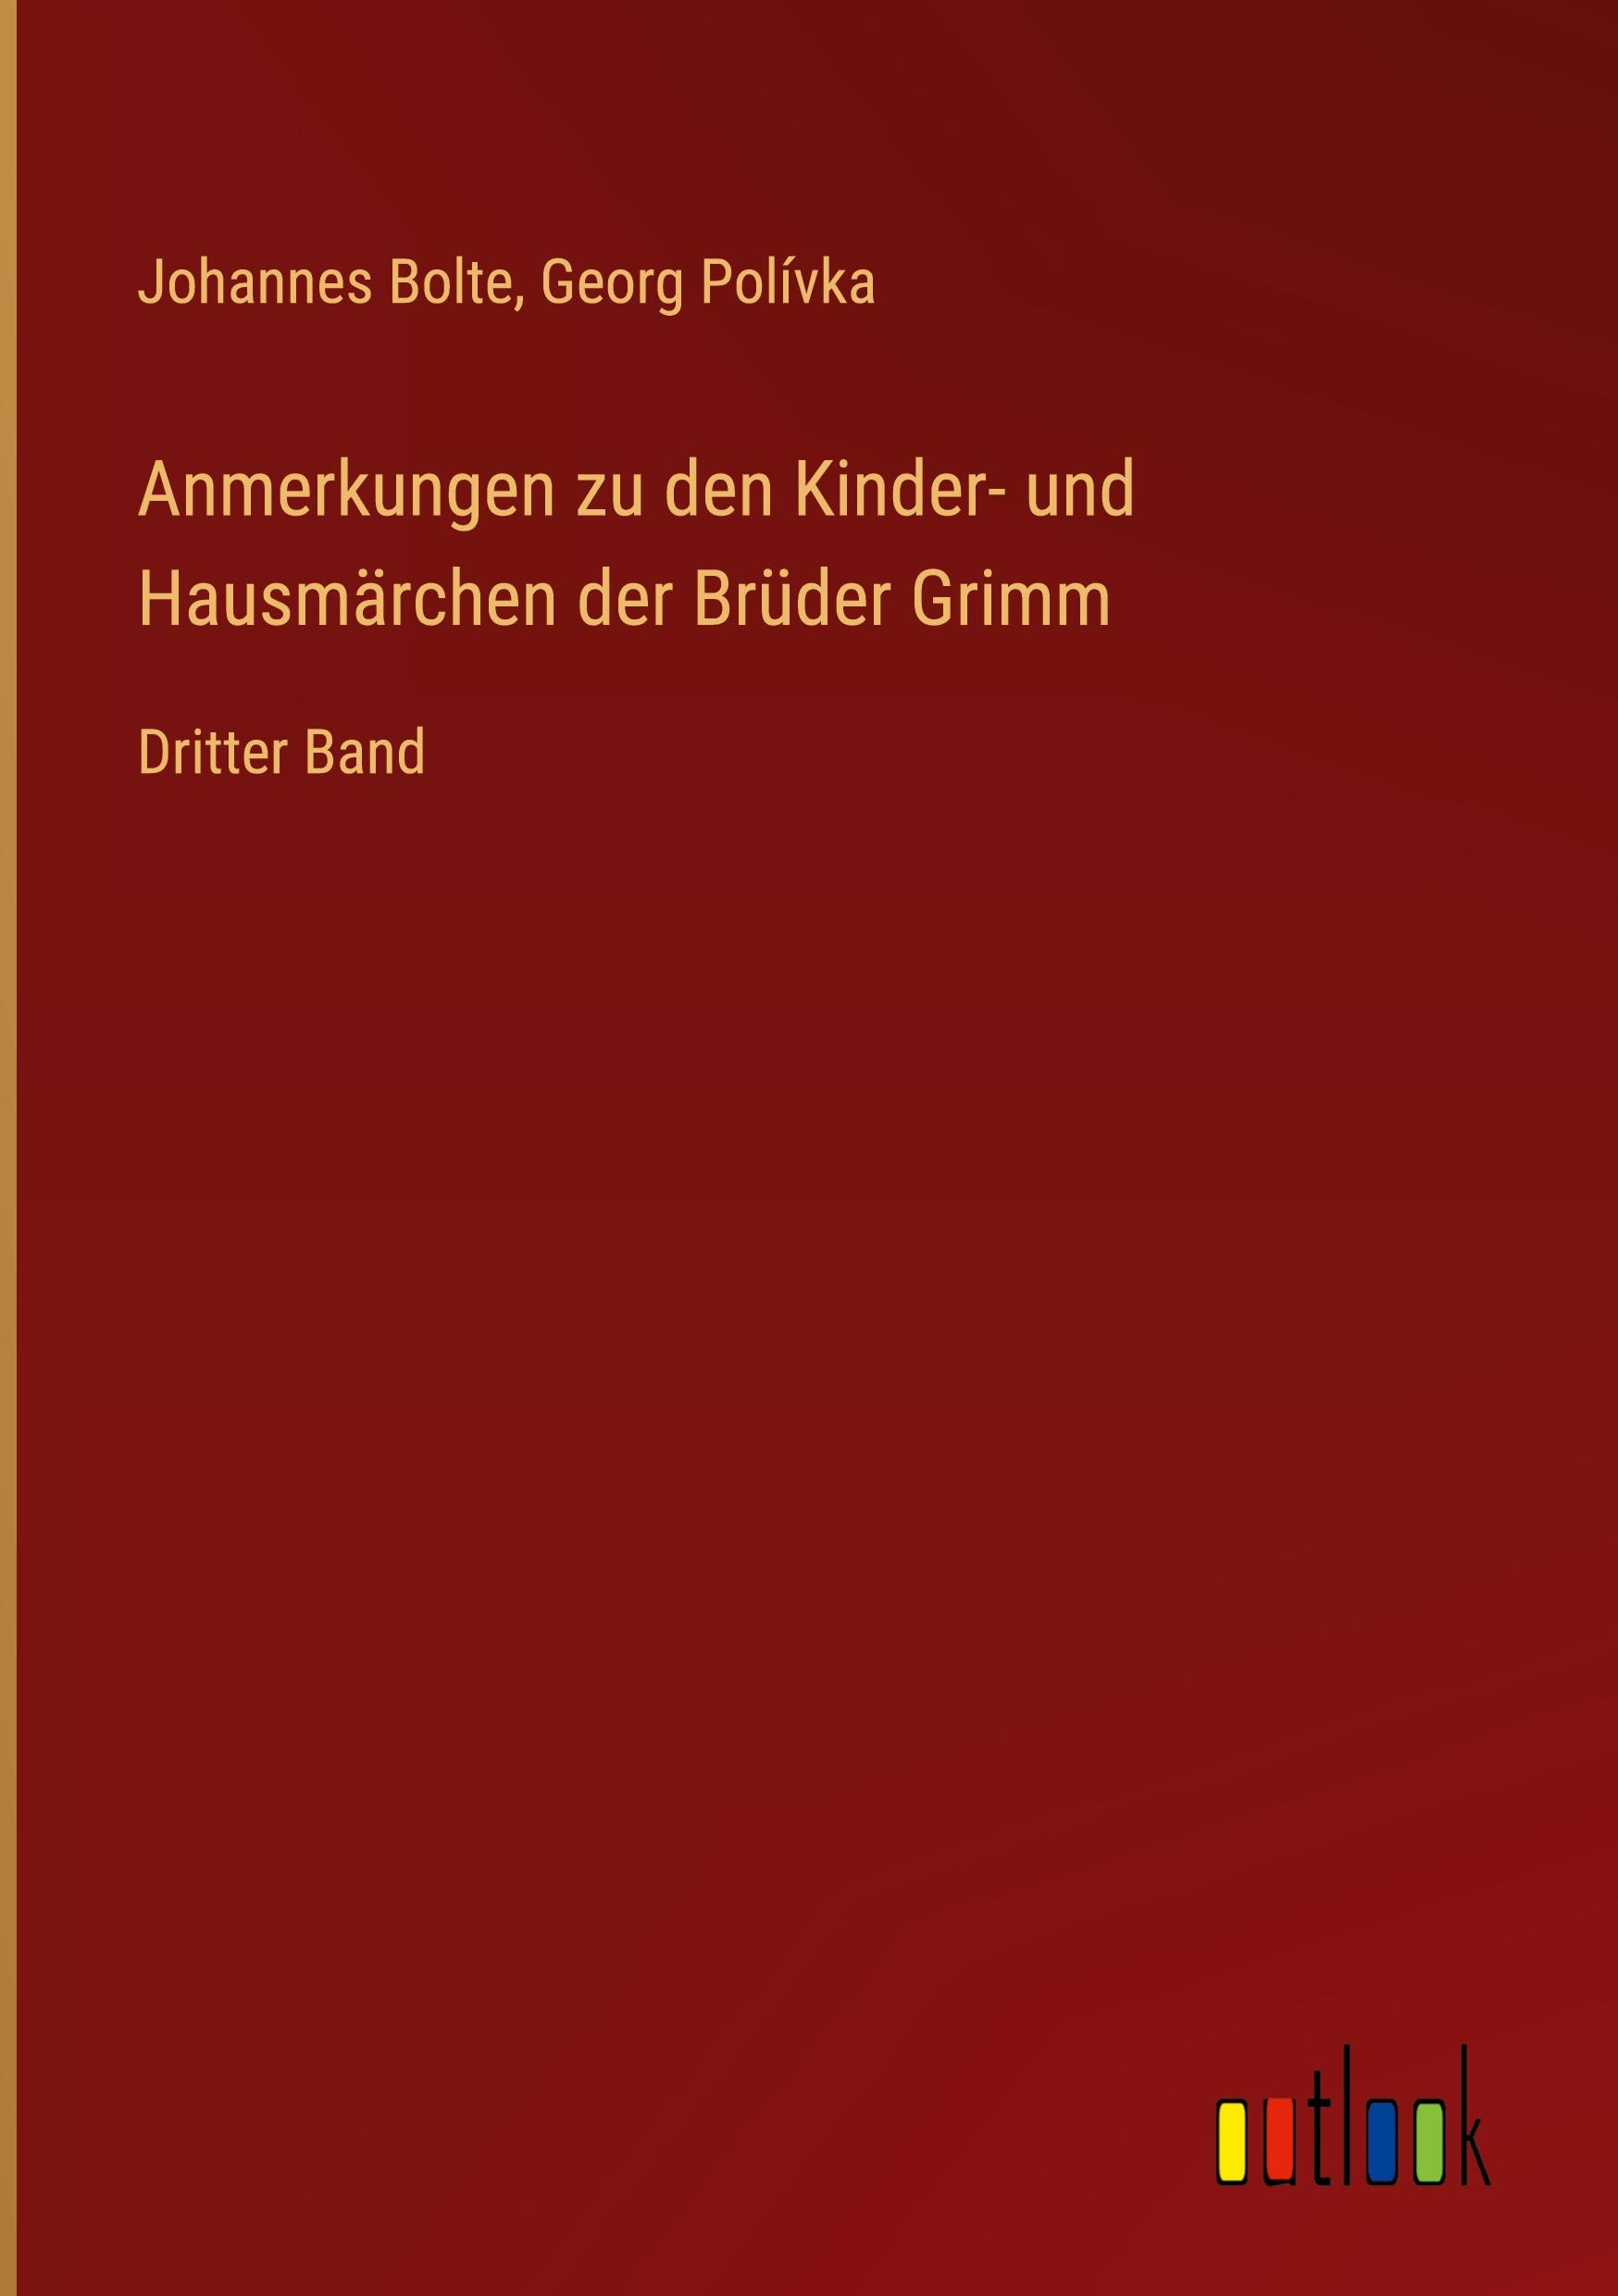 Anmerkungen zu den Kinder- und Hausmaerchen der Brueder Grimm - Bolte, Johannes Polívka, Georg